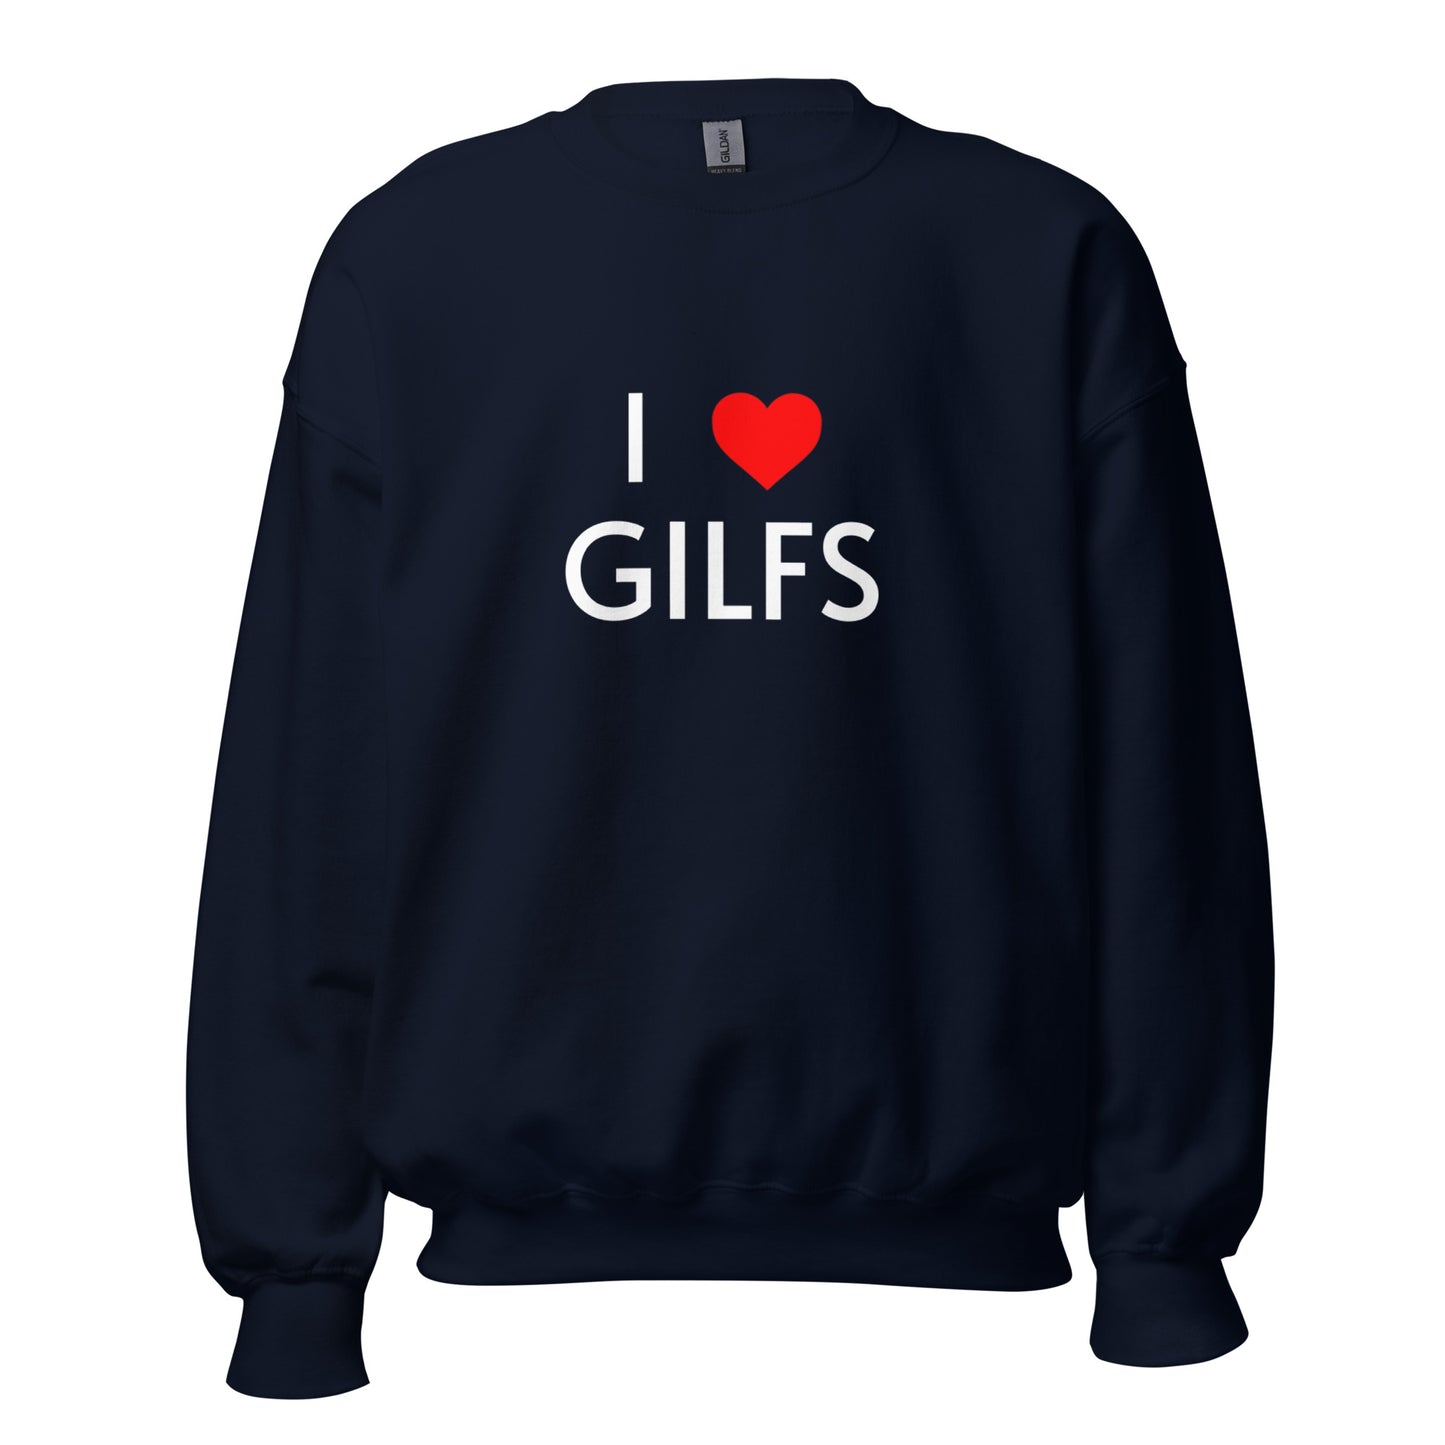 I LOVE GILFS